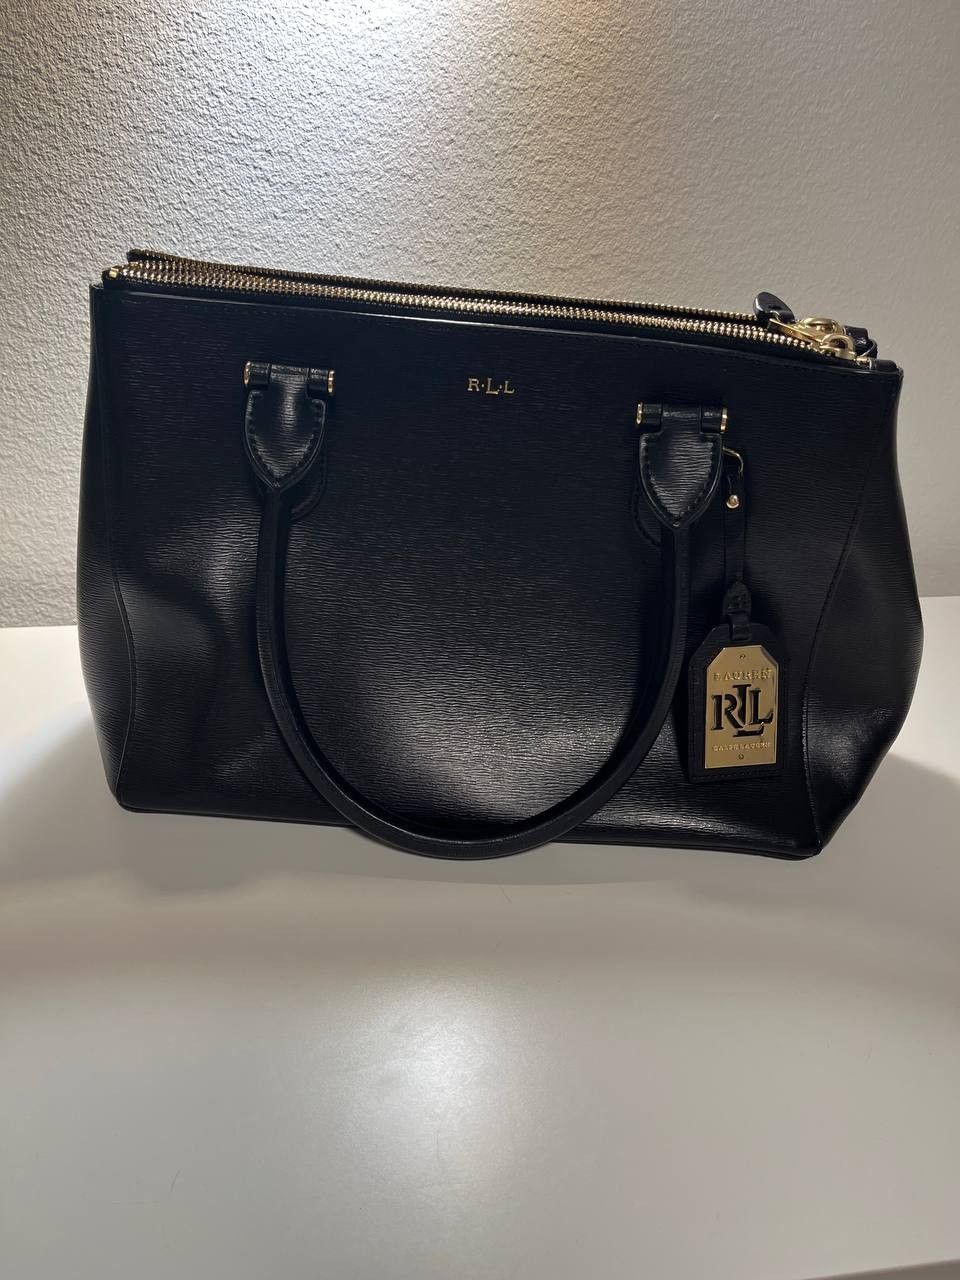 Ralph Lauren leather bag